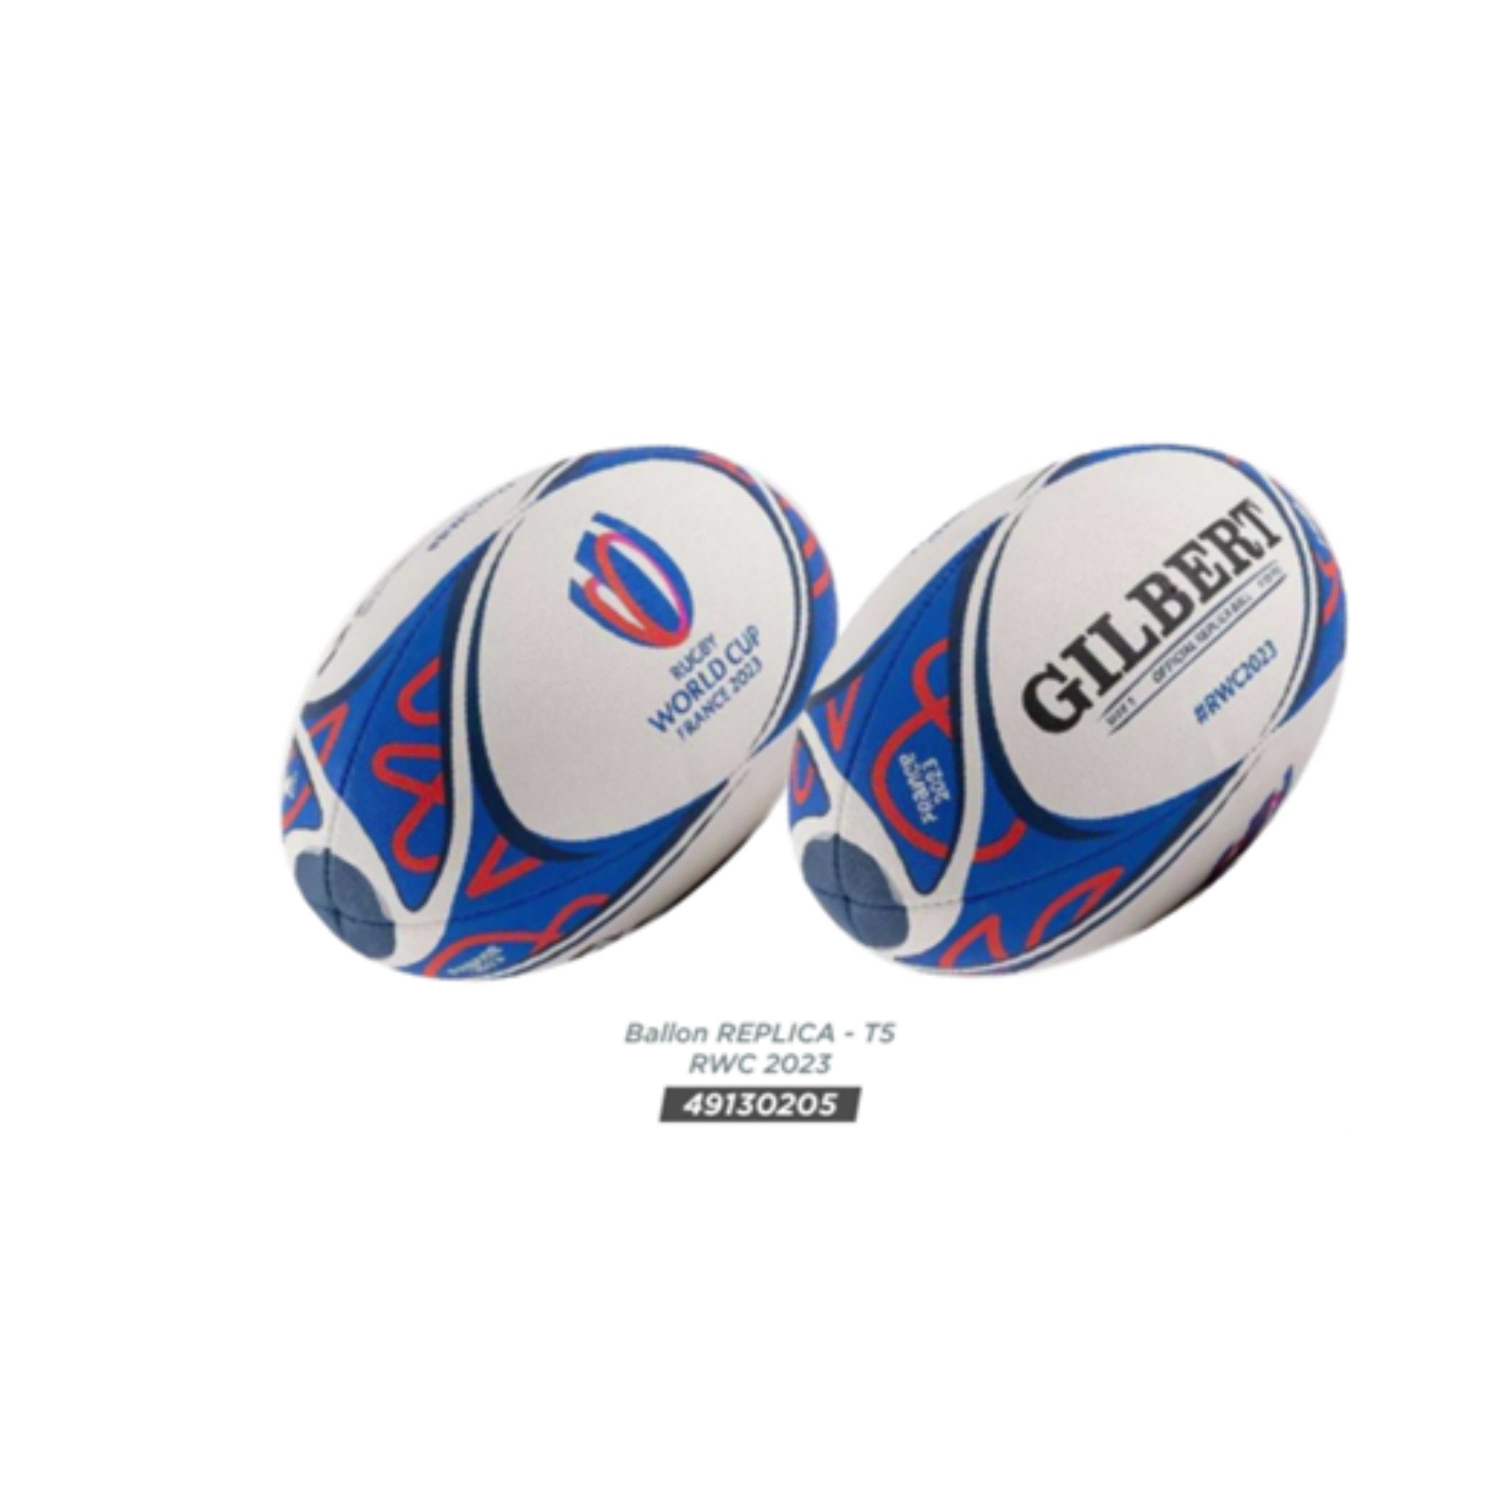 Gilbert Ballon France Rugby, Réplica T5 